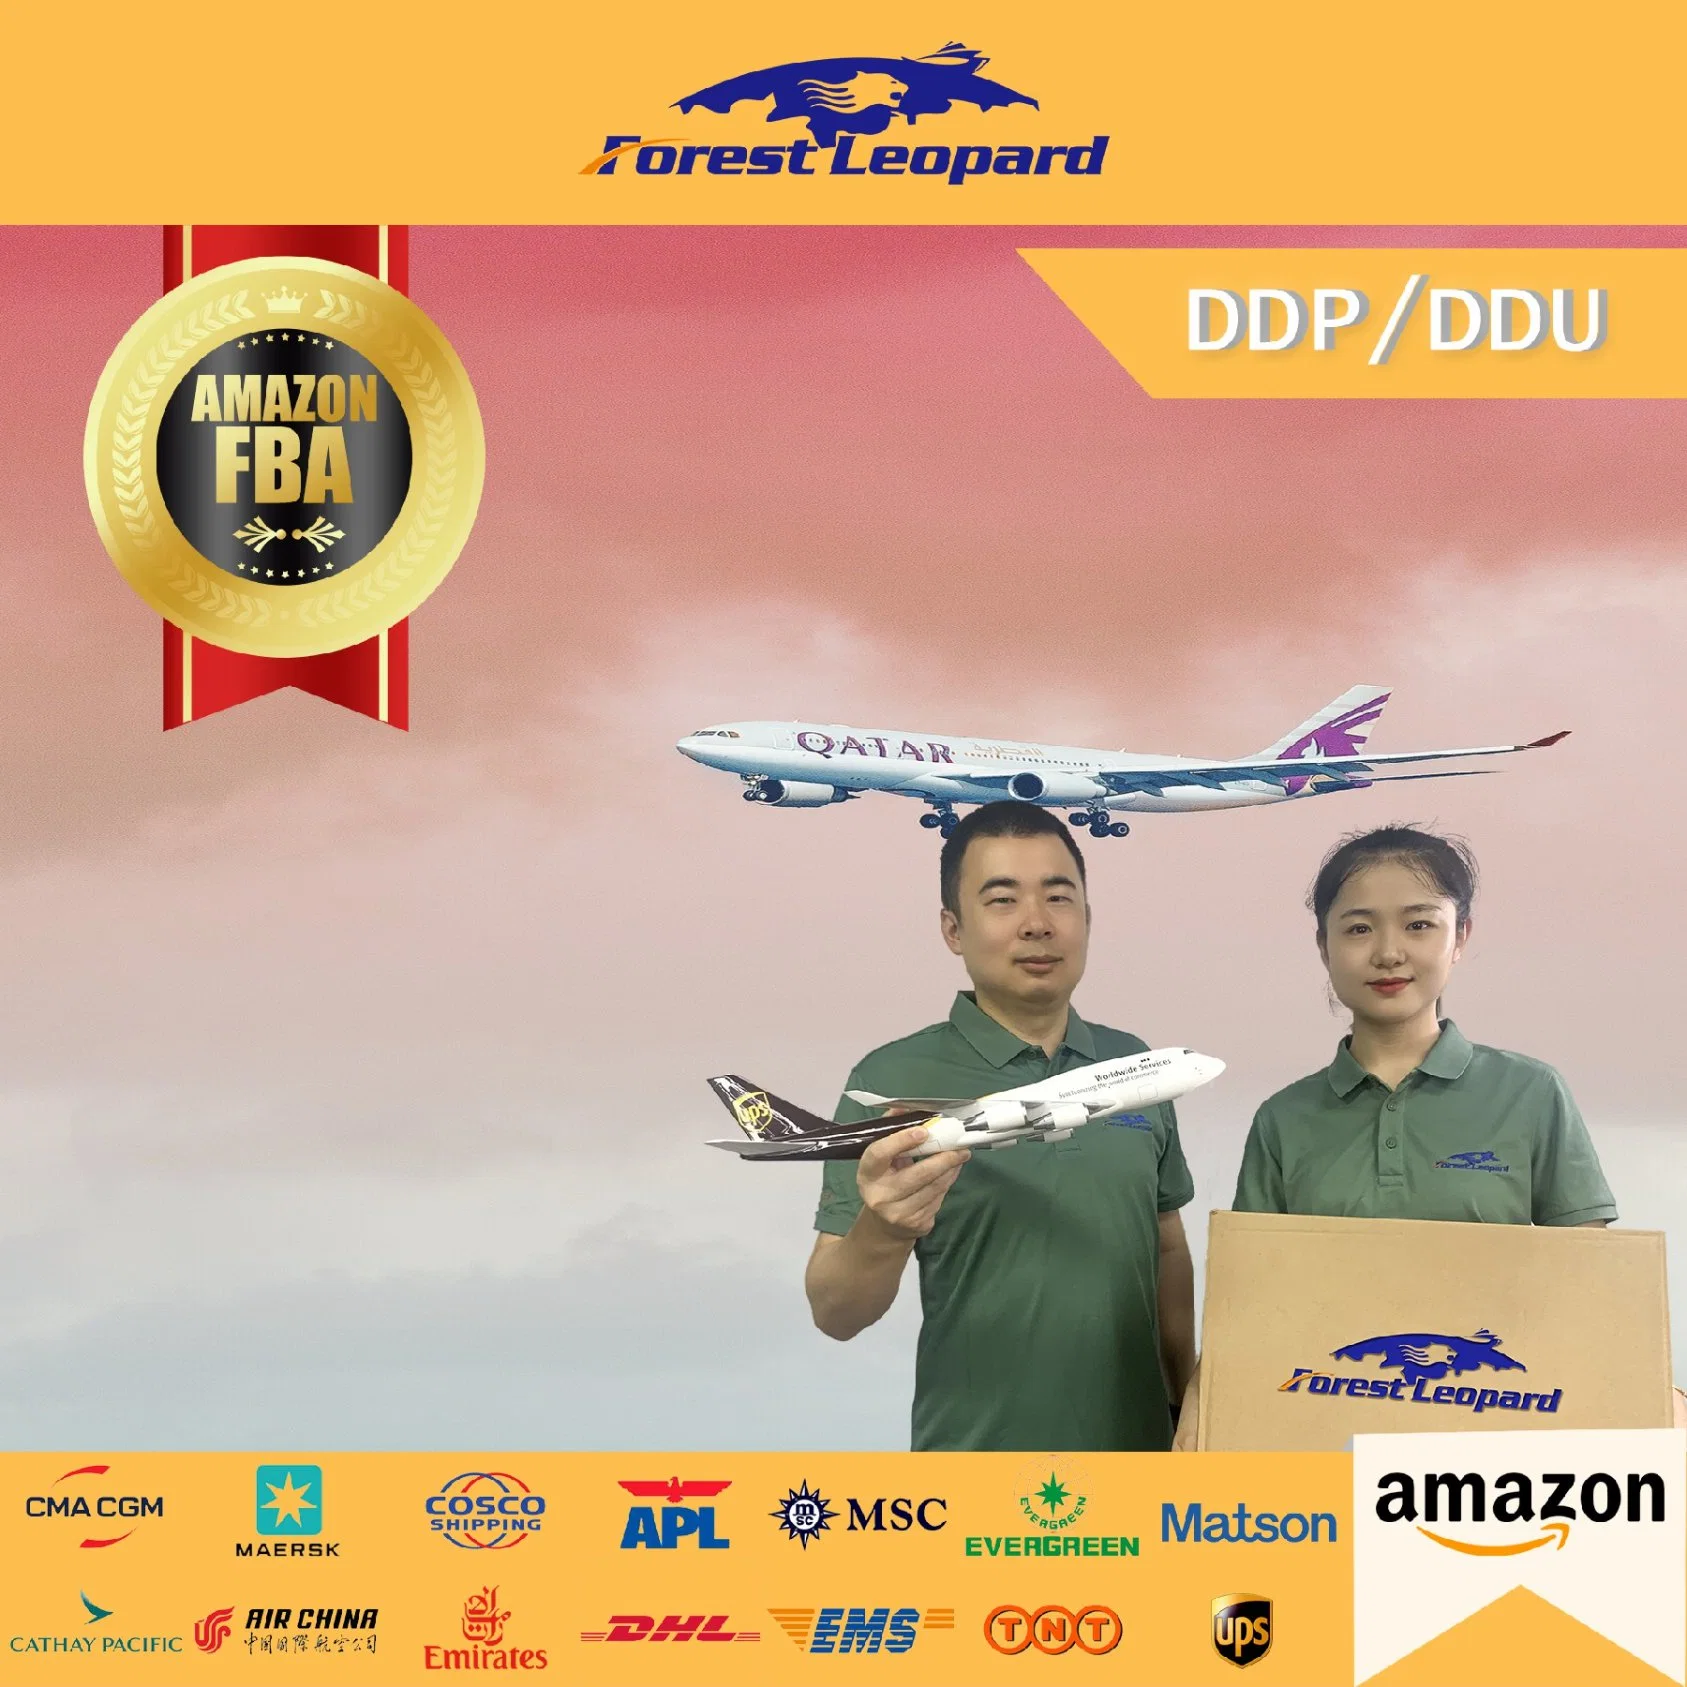 DDU económico servicio de envío aéreo de China en el Reino Unido Amazon Fba bosque del servicio de fletes aéreos logística de leopardo en todo el mundo